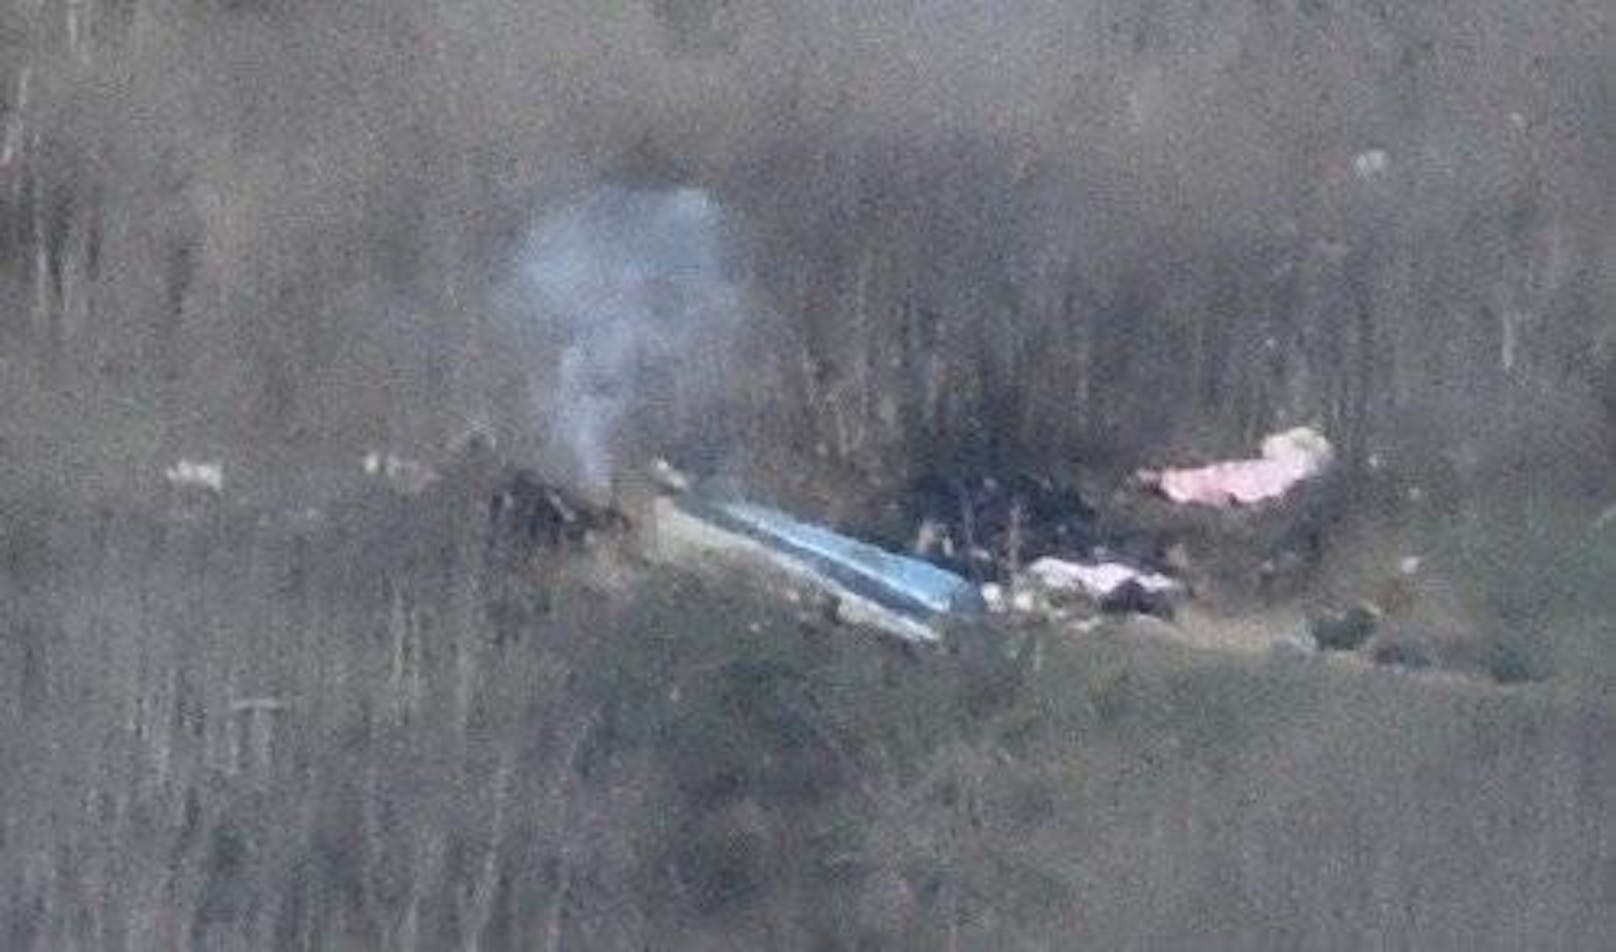 Um 9:45 Uhr Ortszeit sei der Helikopter in einen Berg geflogen und abgestürzt. Die US-Luftfahrtbehörde kündigte eine Untersuchung zum Unfallhergang an.